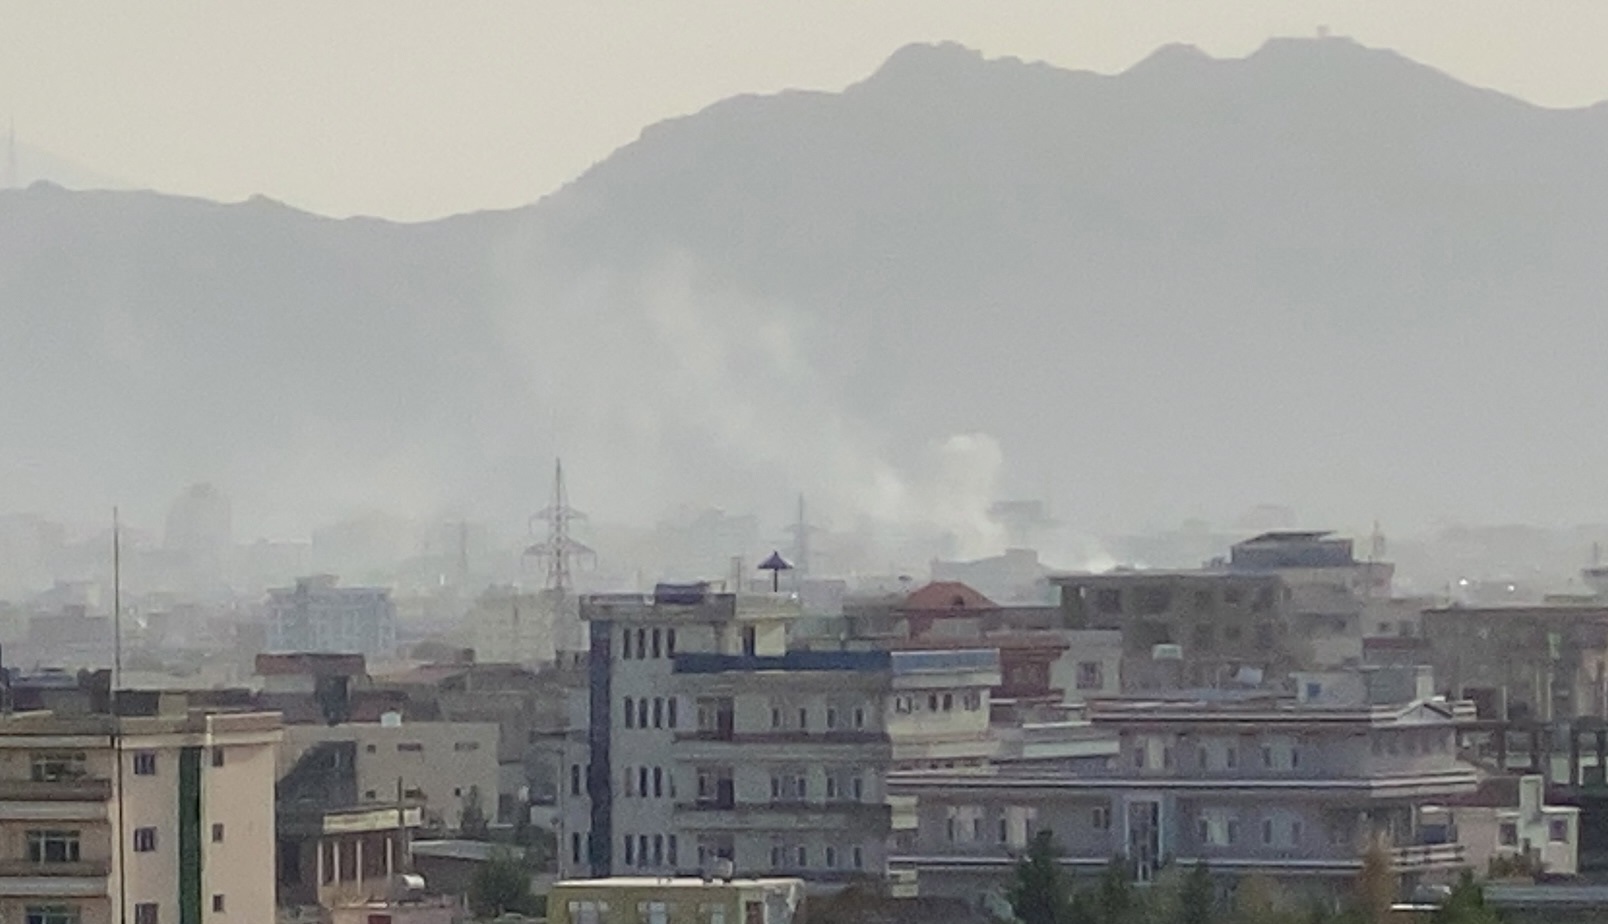 Ondas de humo en el lugar tras una explosión cerca del Aeropuerto Internacional Hamid Karzai, en Kabul, Afganistán. (Foto Prensa Libre: EFE)